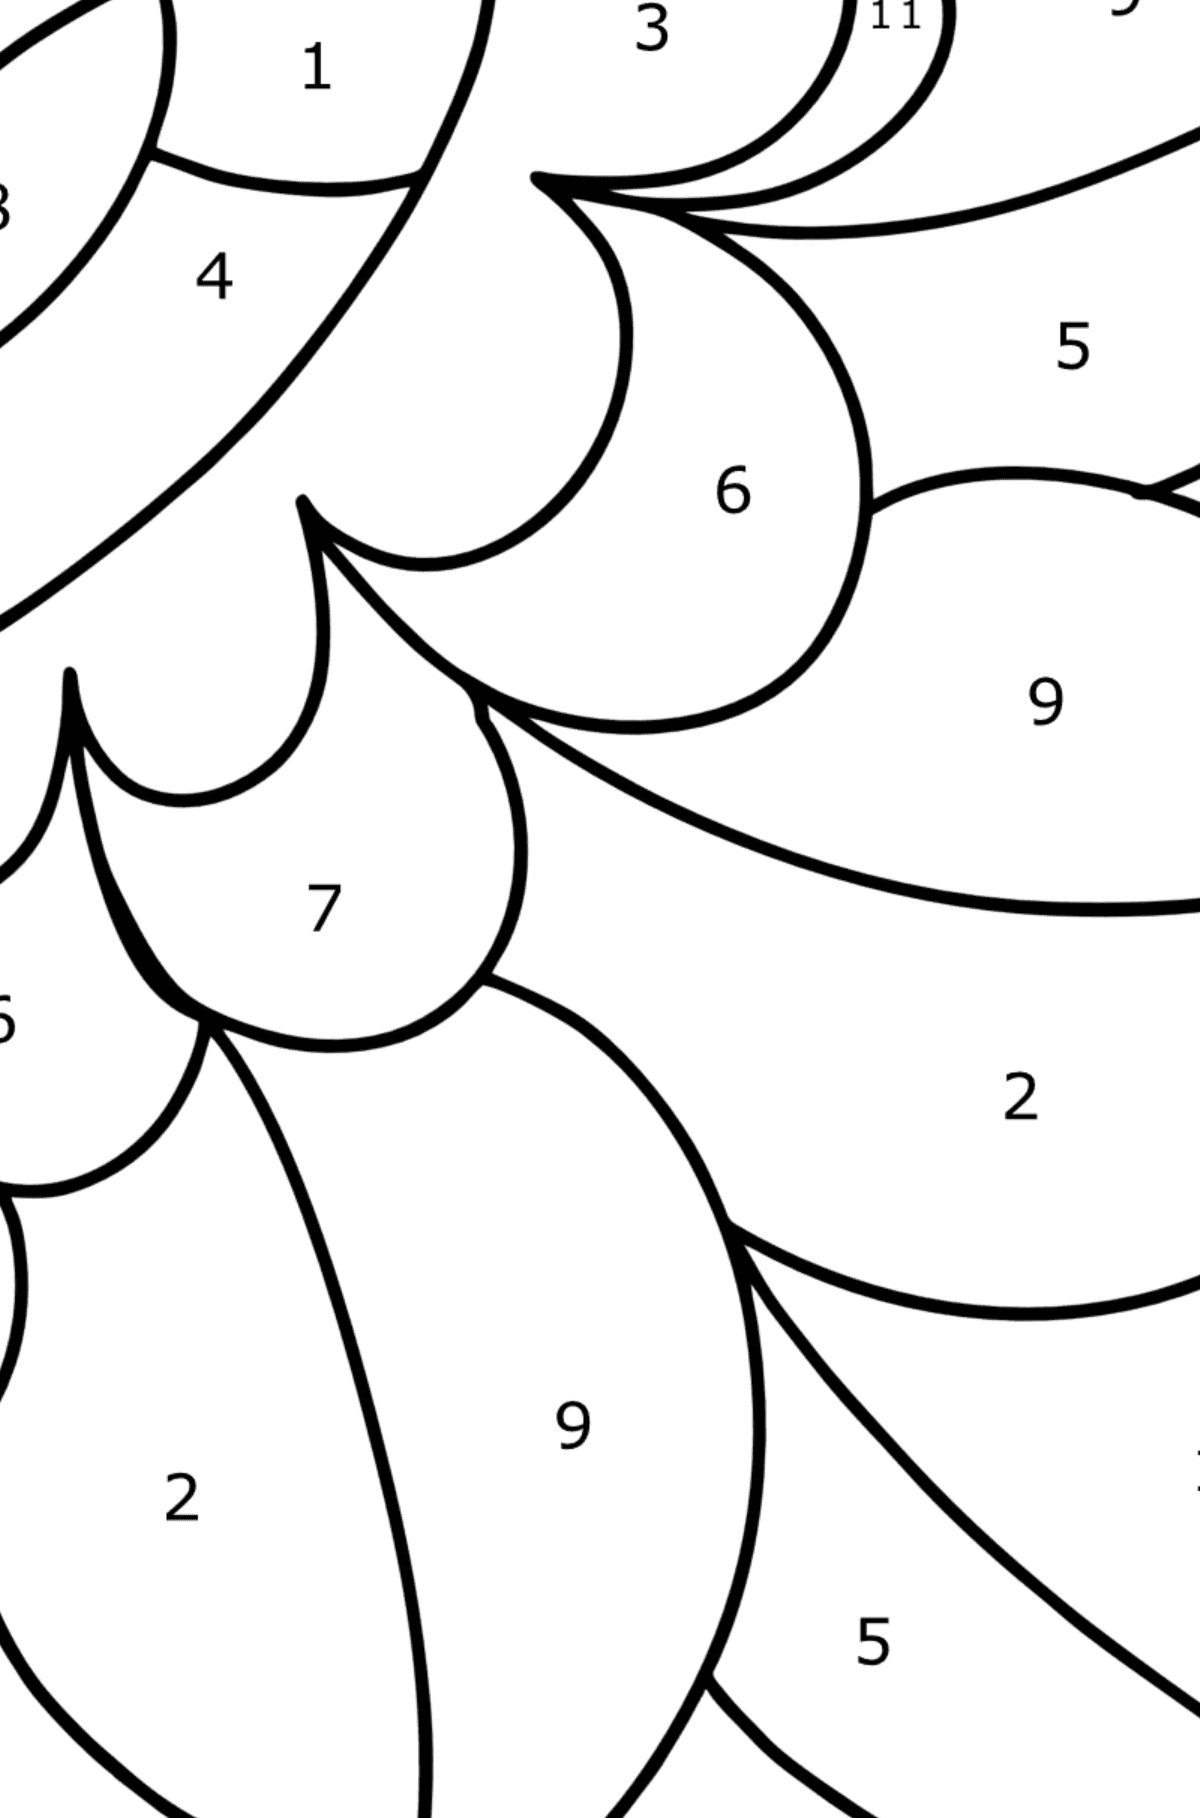 Ausmalbild Zentangle Blumenmuster - Malen nach Zahlen für Kinder